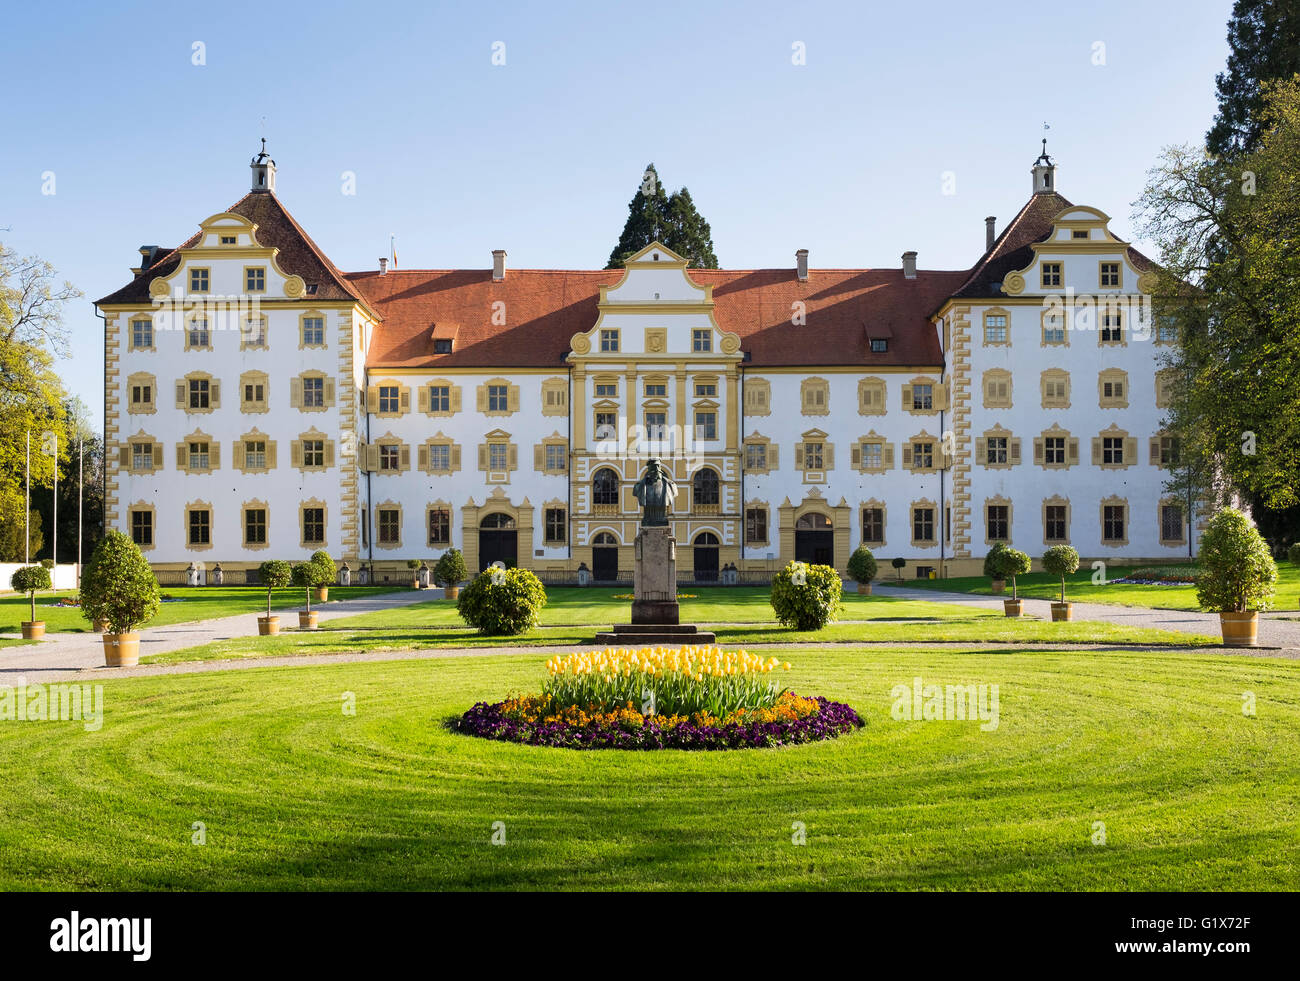 Schloss Salem château, Lac de Constance, district de Souabe, Bade-Wurtemberg, Allemagne Banque D'Images